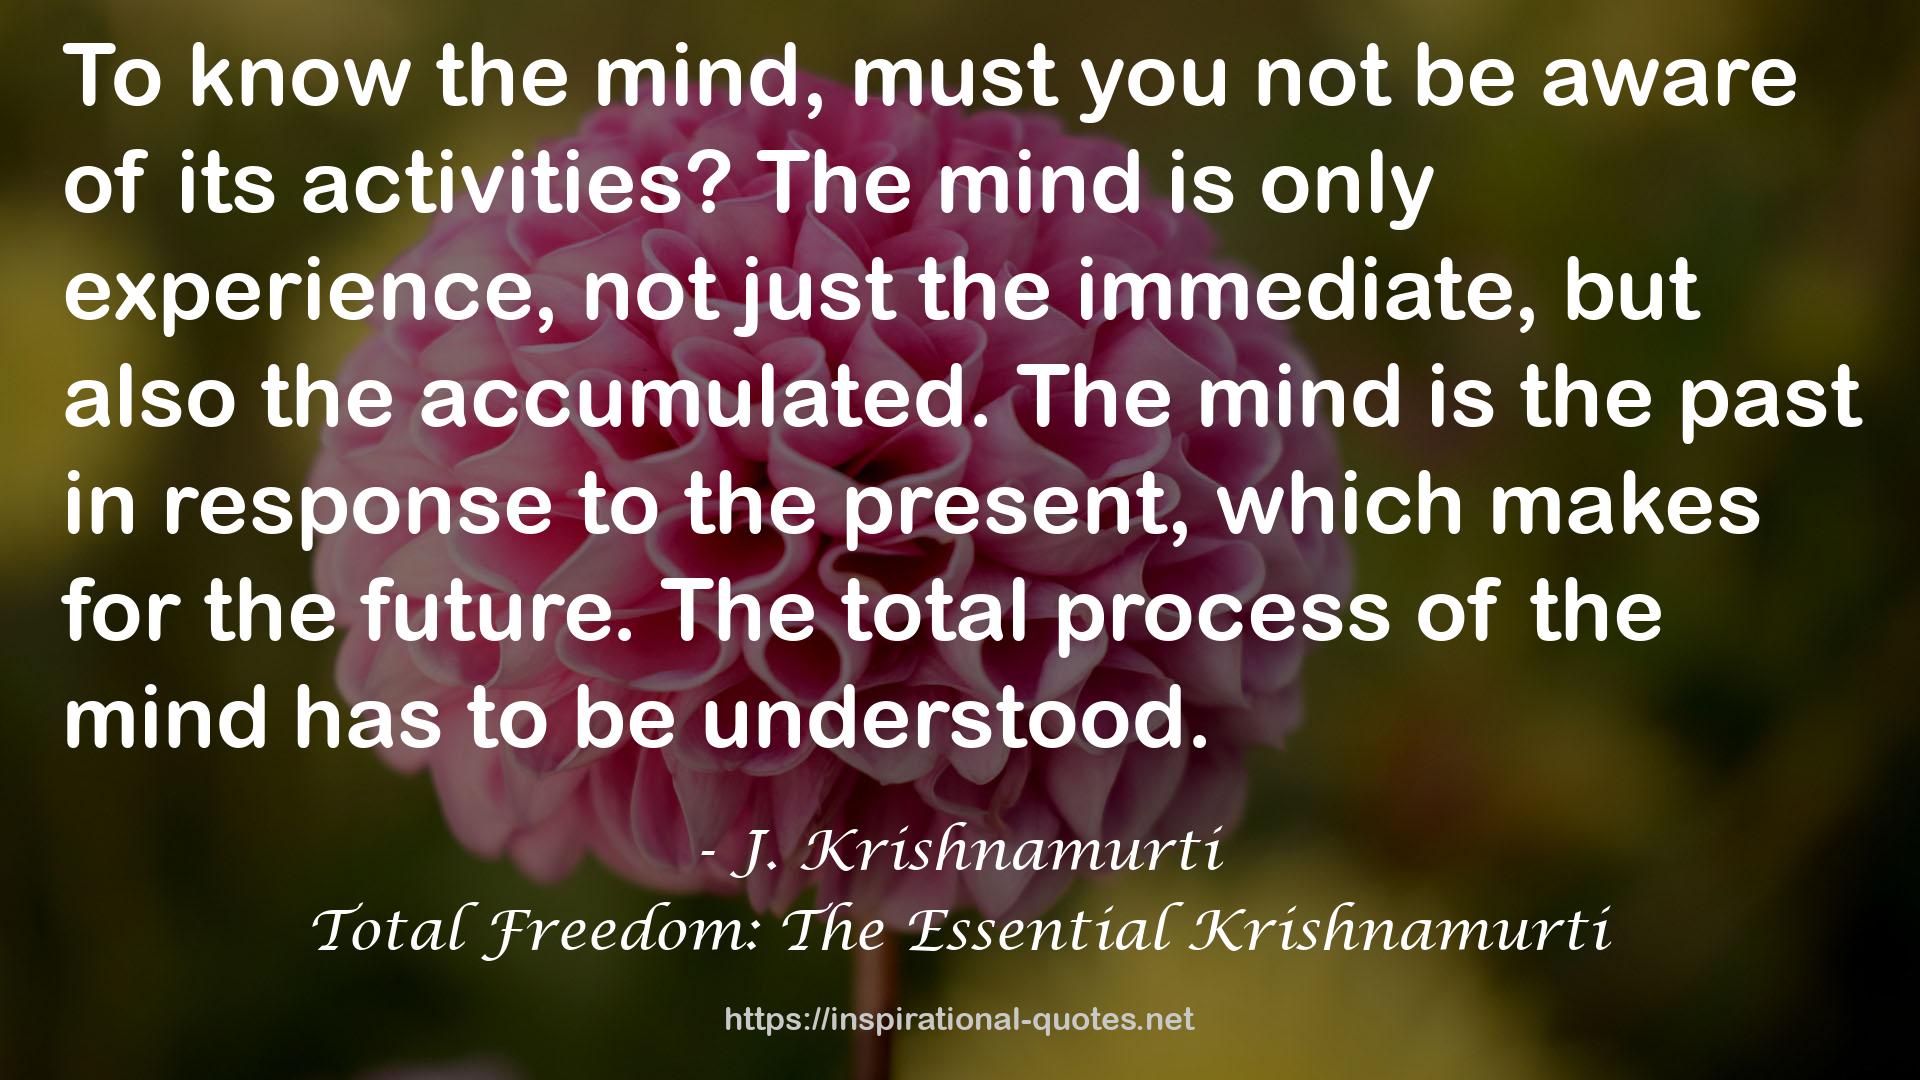 Total Freedom: The Essential Krishnamurti QUOTES